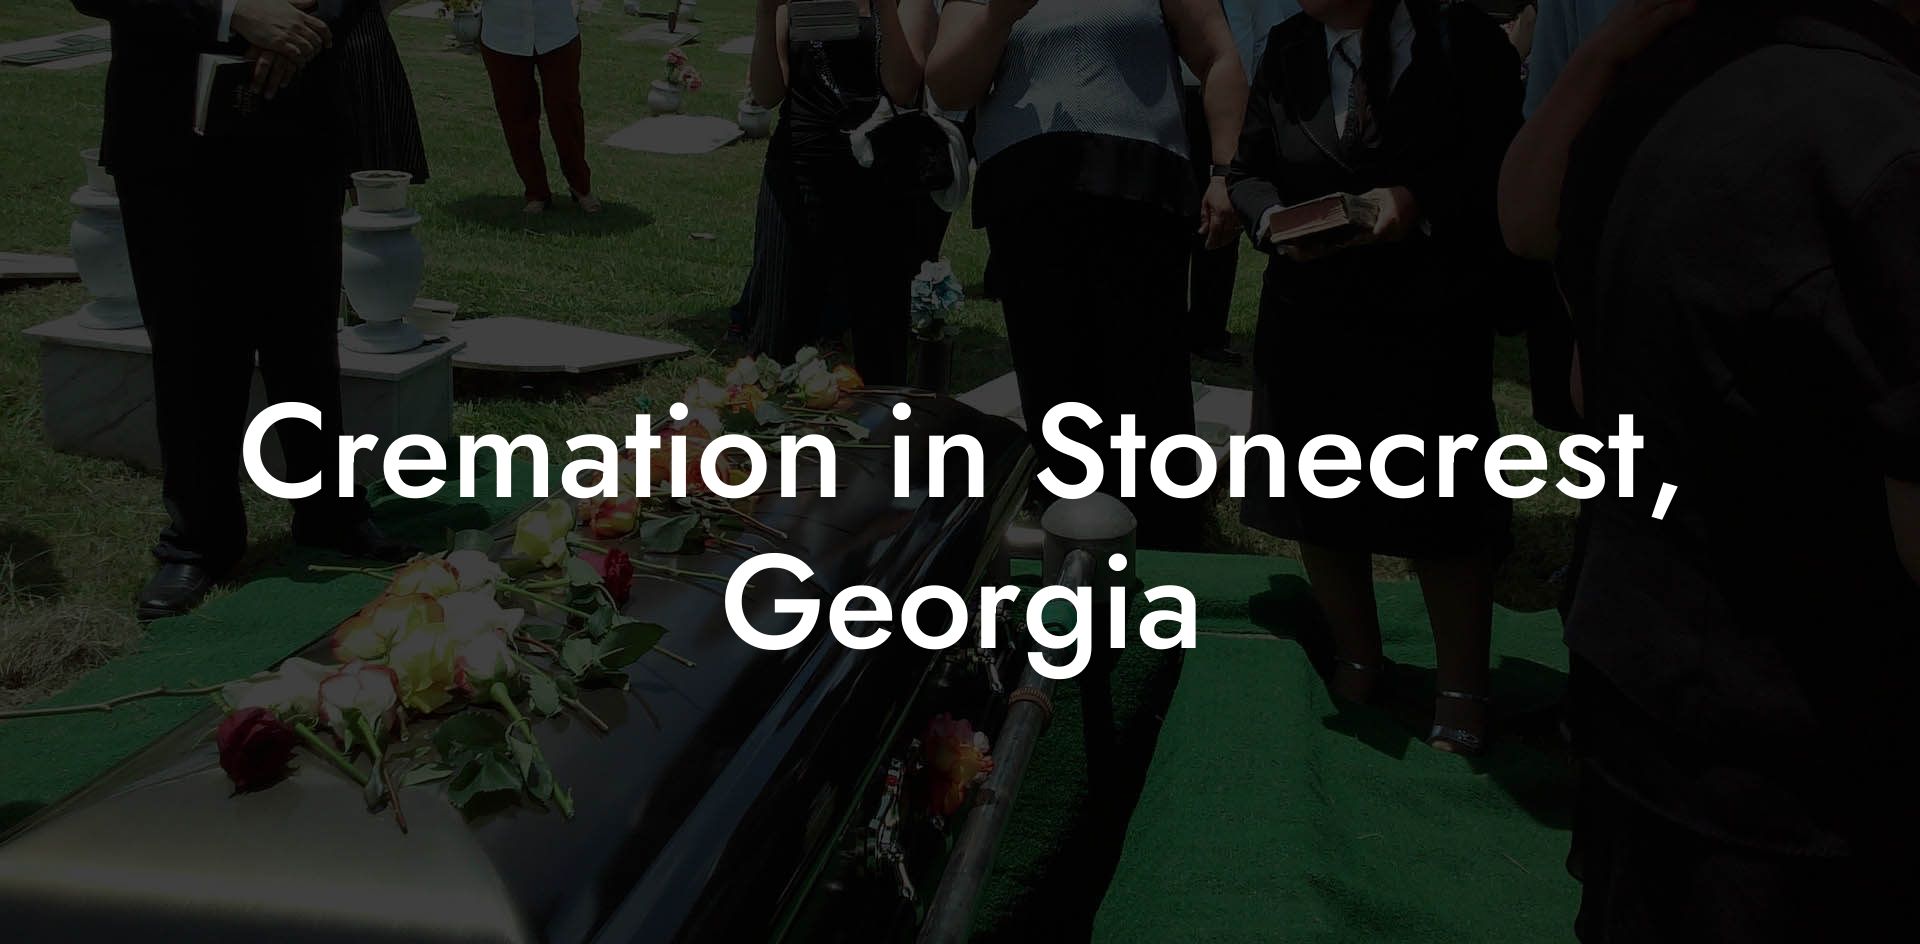 Cremation in Stonecrest, Georgia